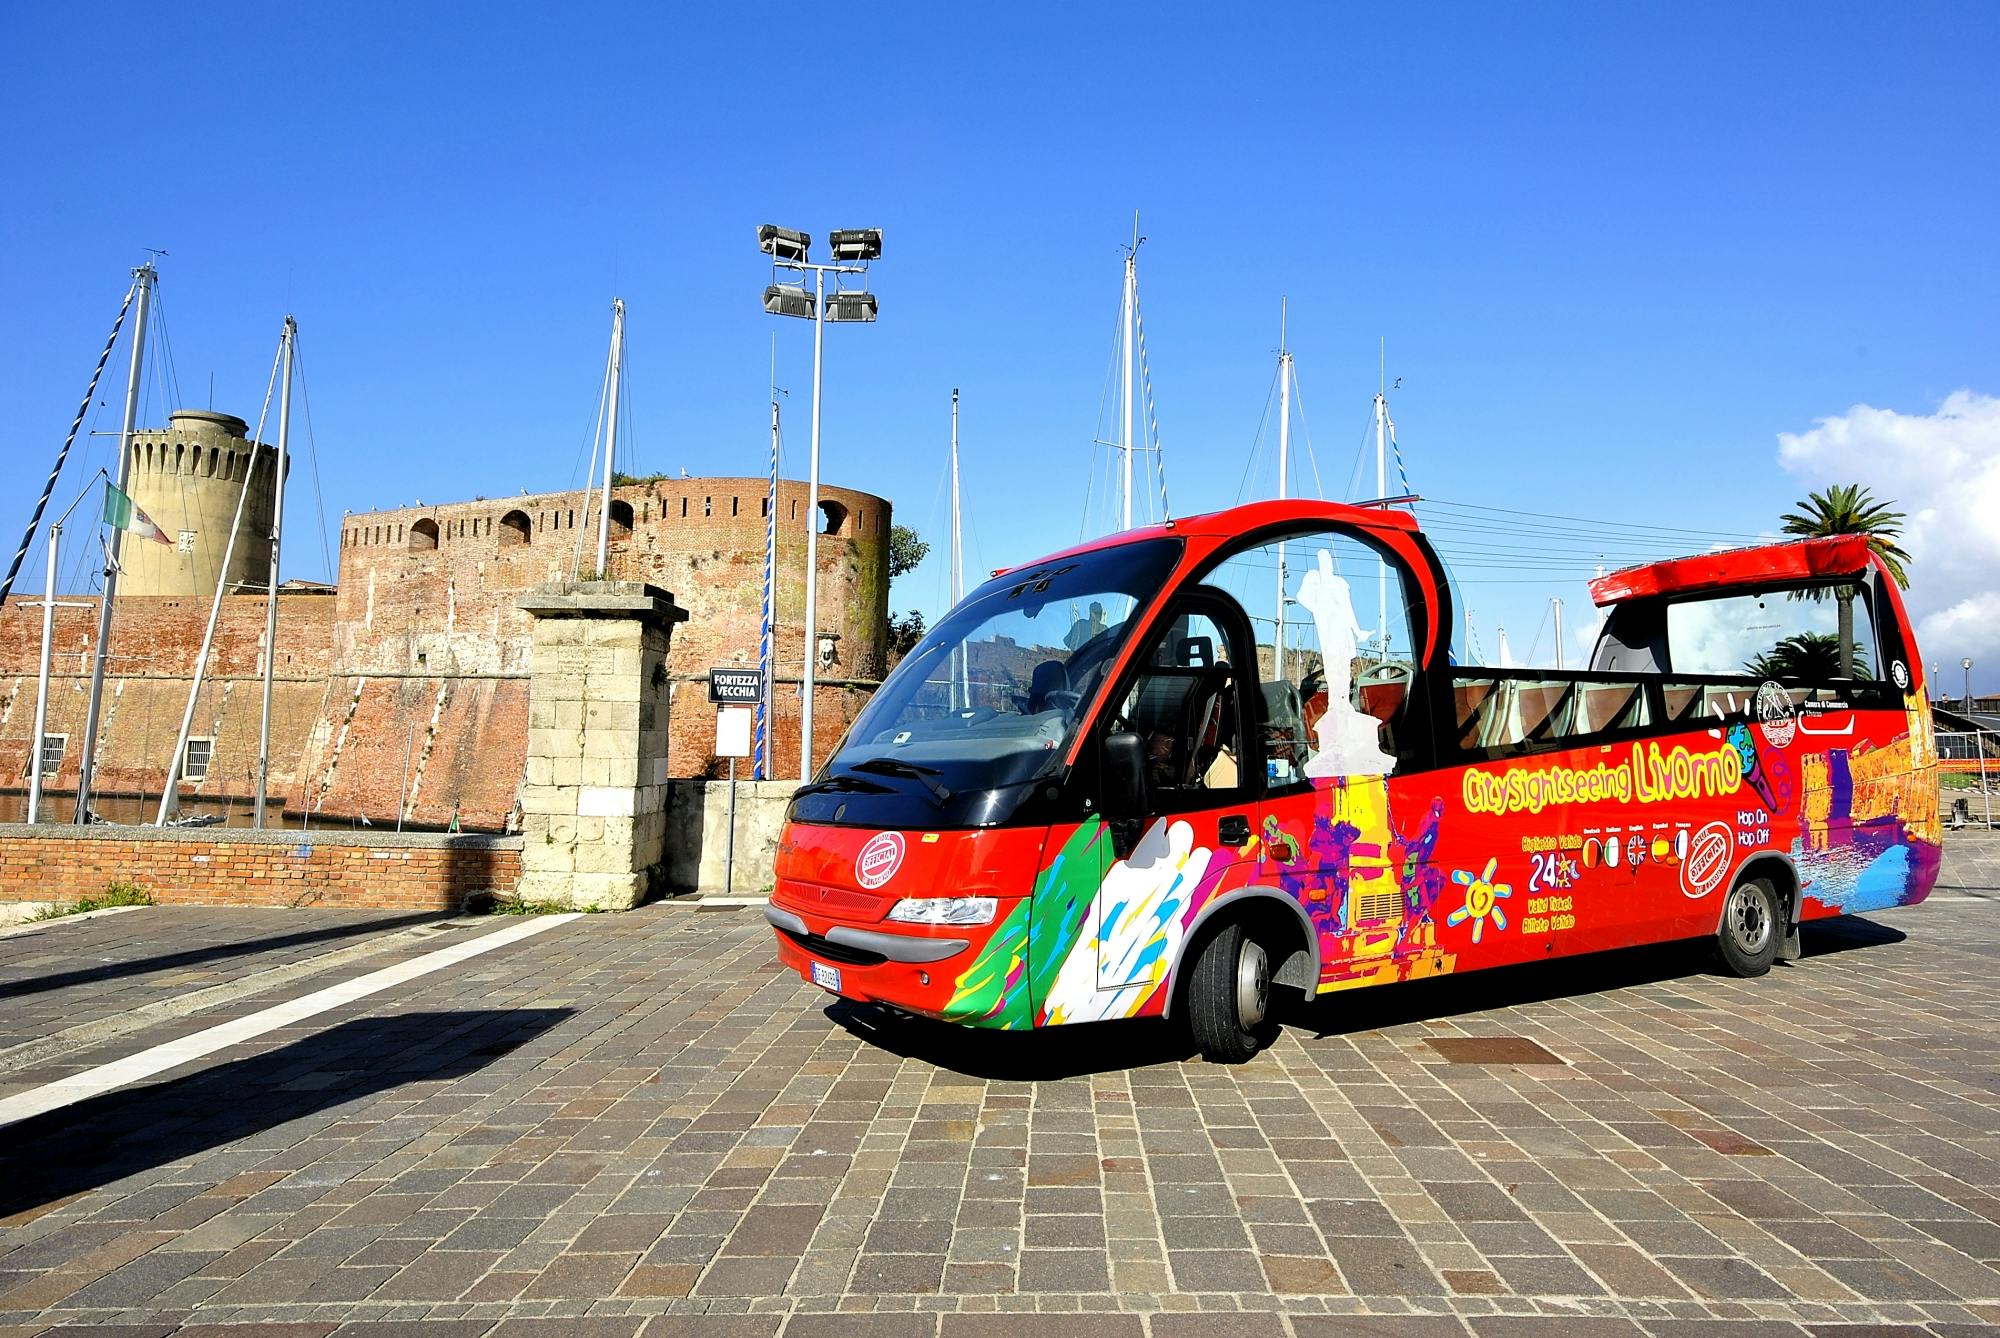 Livorno hop-on hop-off ônibus 24 horas